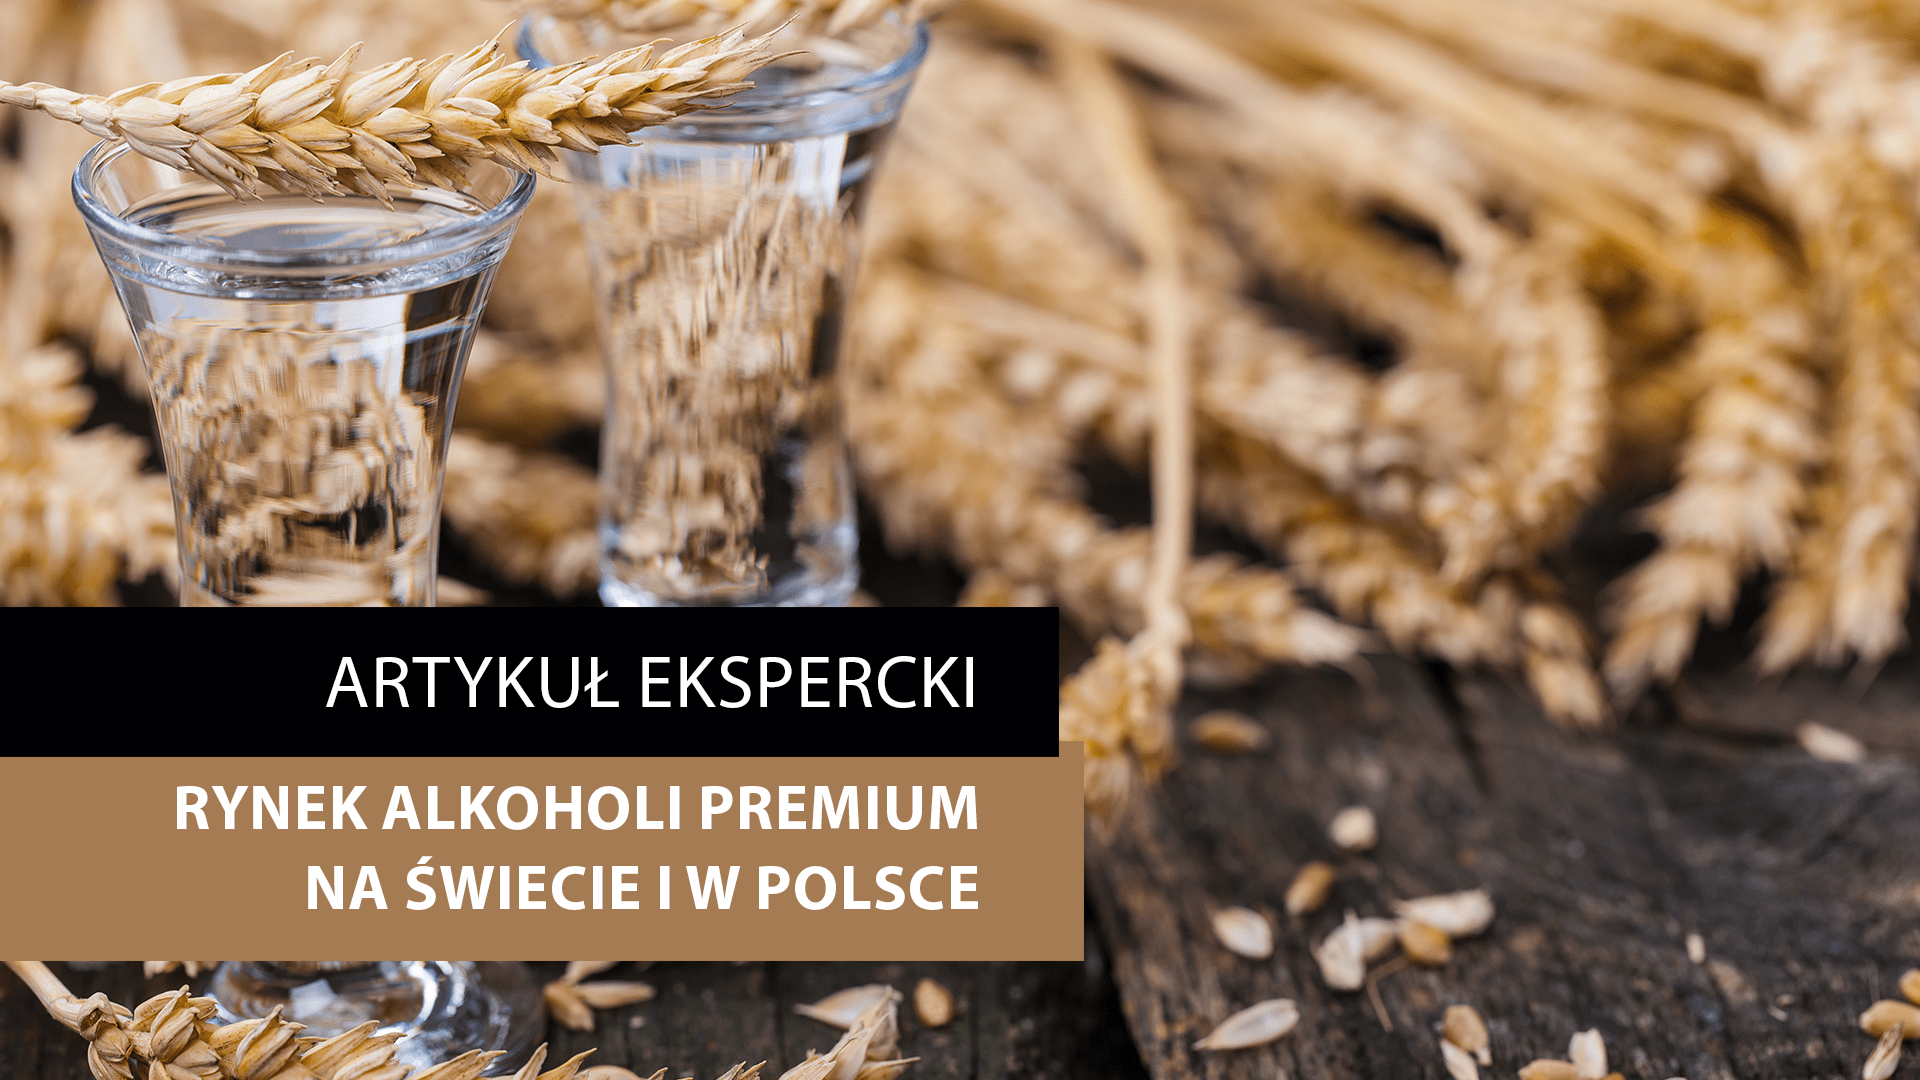 Rynek alkoholi premium na świecie  i w Polsce – artykuł ekspercki